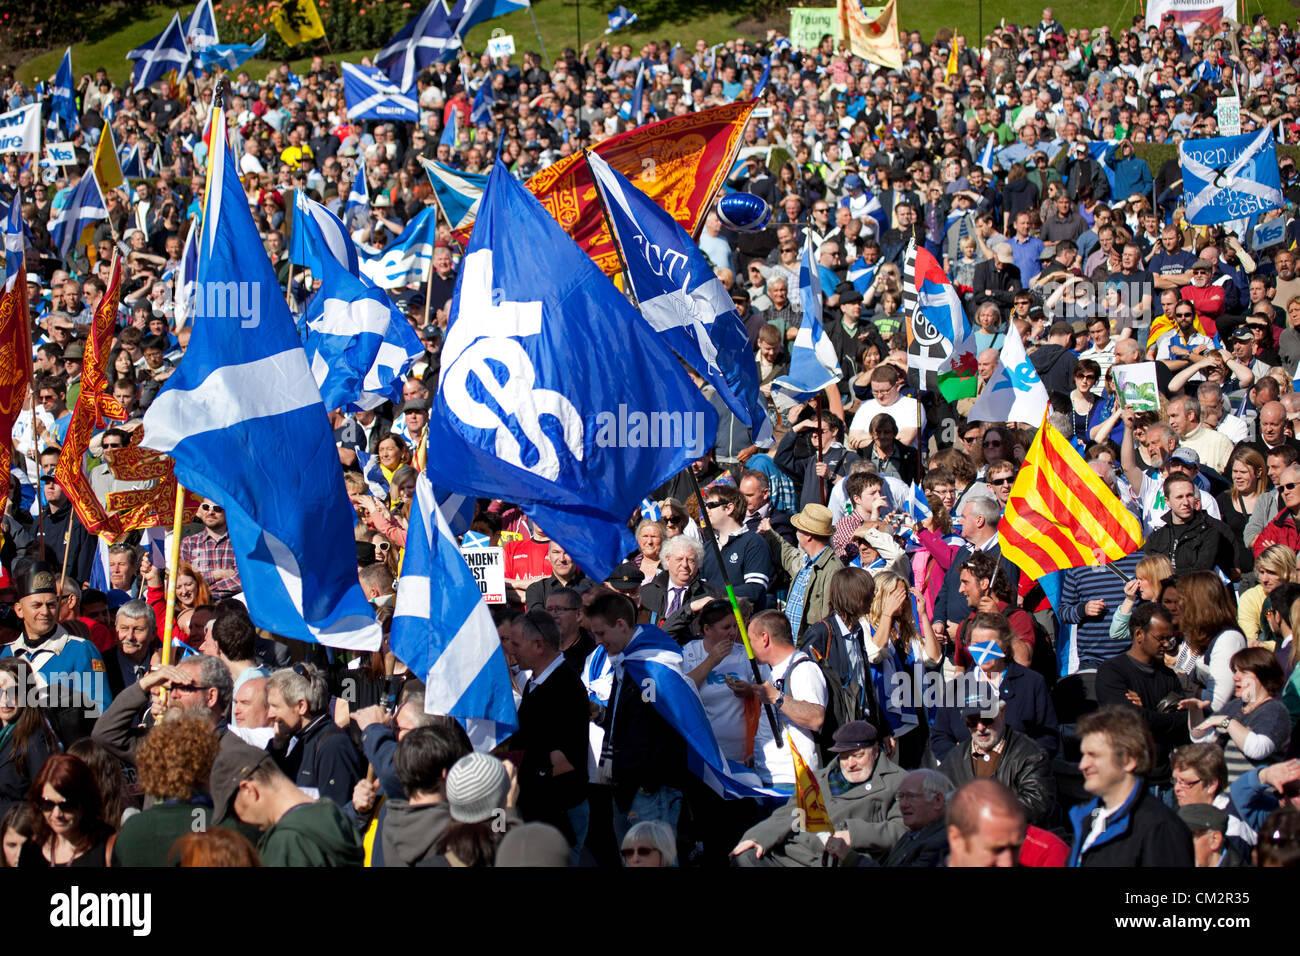 22 settembre 2012, Edimburgo, una stima di cinque mila persone hanno preso parte ad un evento nella città volti a dimostrare il supporto per l'indipendenza. Entrambi i giovani e vecchi sventolando saltires e leone rampante bandiere raccolte nei prati prima di marciare verso Princes Street Gardens. Il rally è stato messo in scena sotto il vessillo di indipendenza per la Scozia e non è parte del funzionario sì Scozia campagna. Foto Stock